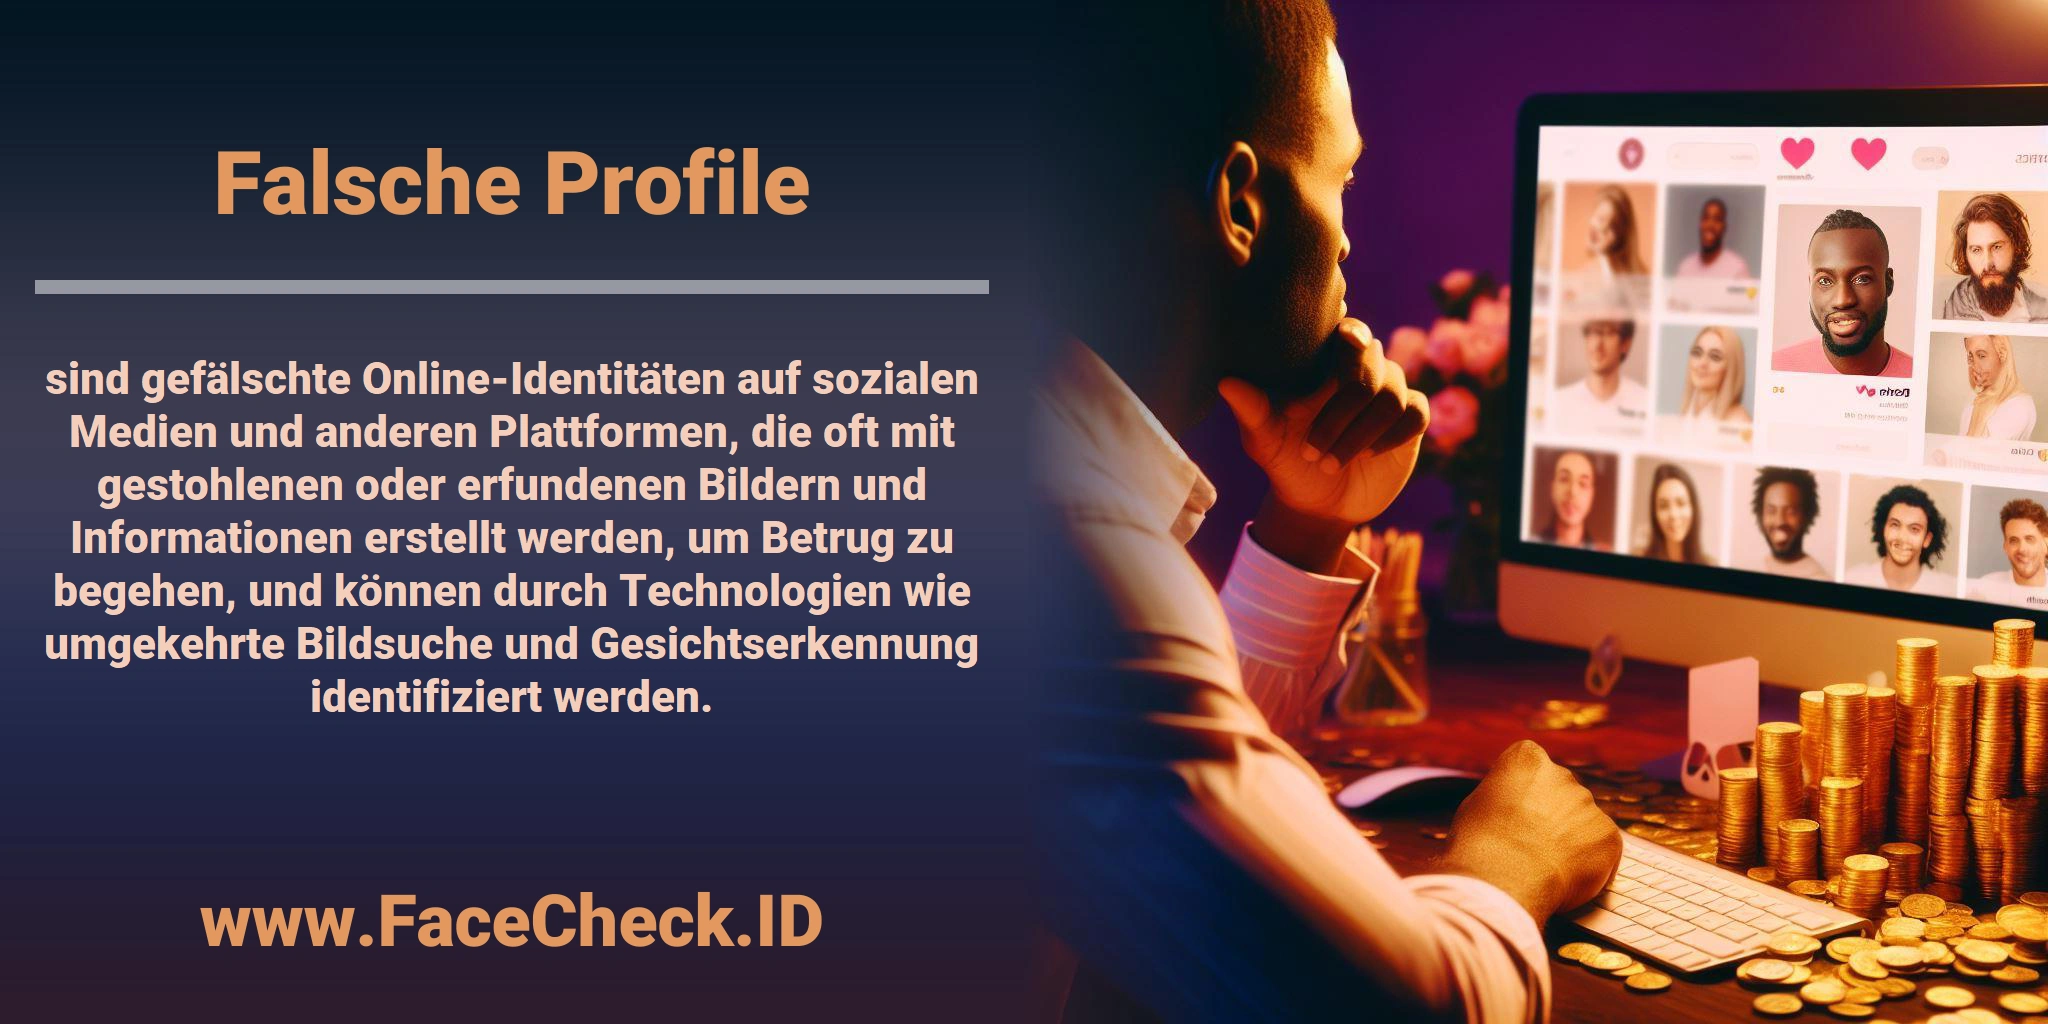 <b>Falsche Profile</b> sind gefälschte Online-Identitäten auf sozialen Medien und anderen Plattformen, die oft mit gestohlenen oder erfundenen Bildern und Informationen erstellt werden, um Betrug zu begehen, und können durch Technologien wie umgekehrte Bildsuche und Gesichtserkennung identifiziert werden.